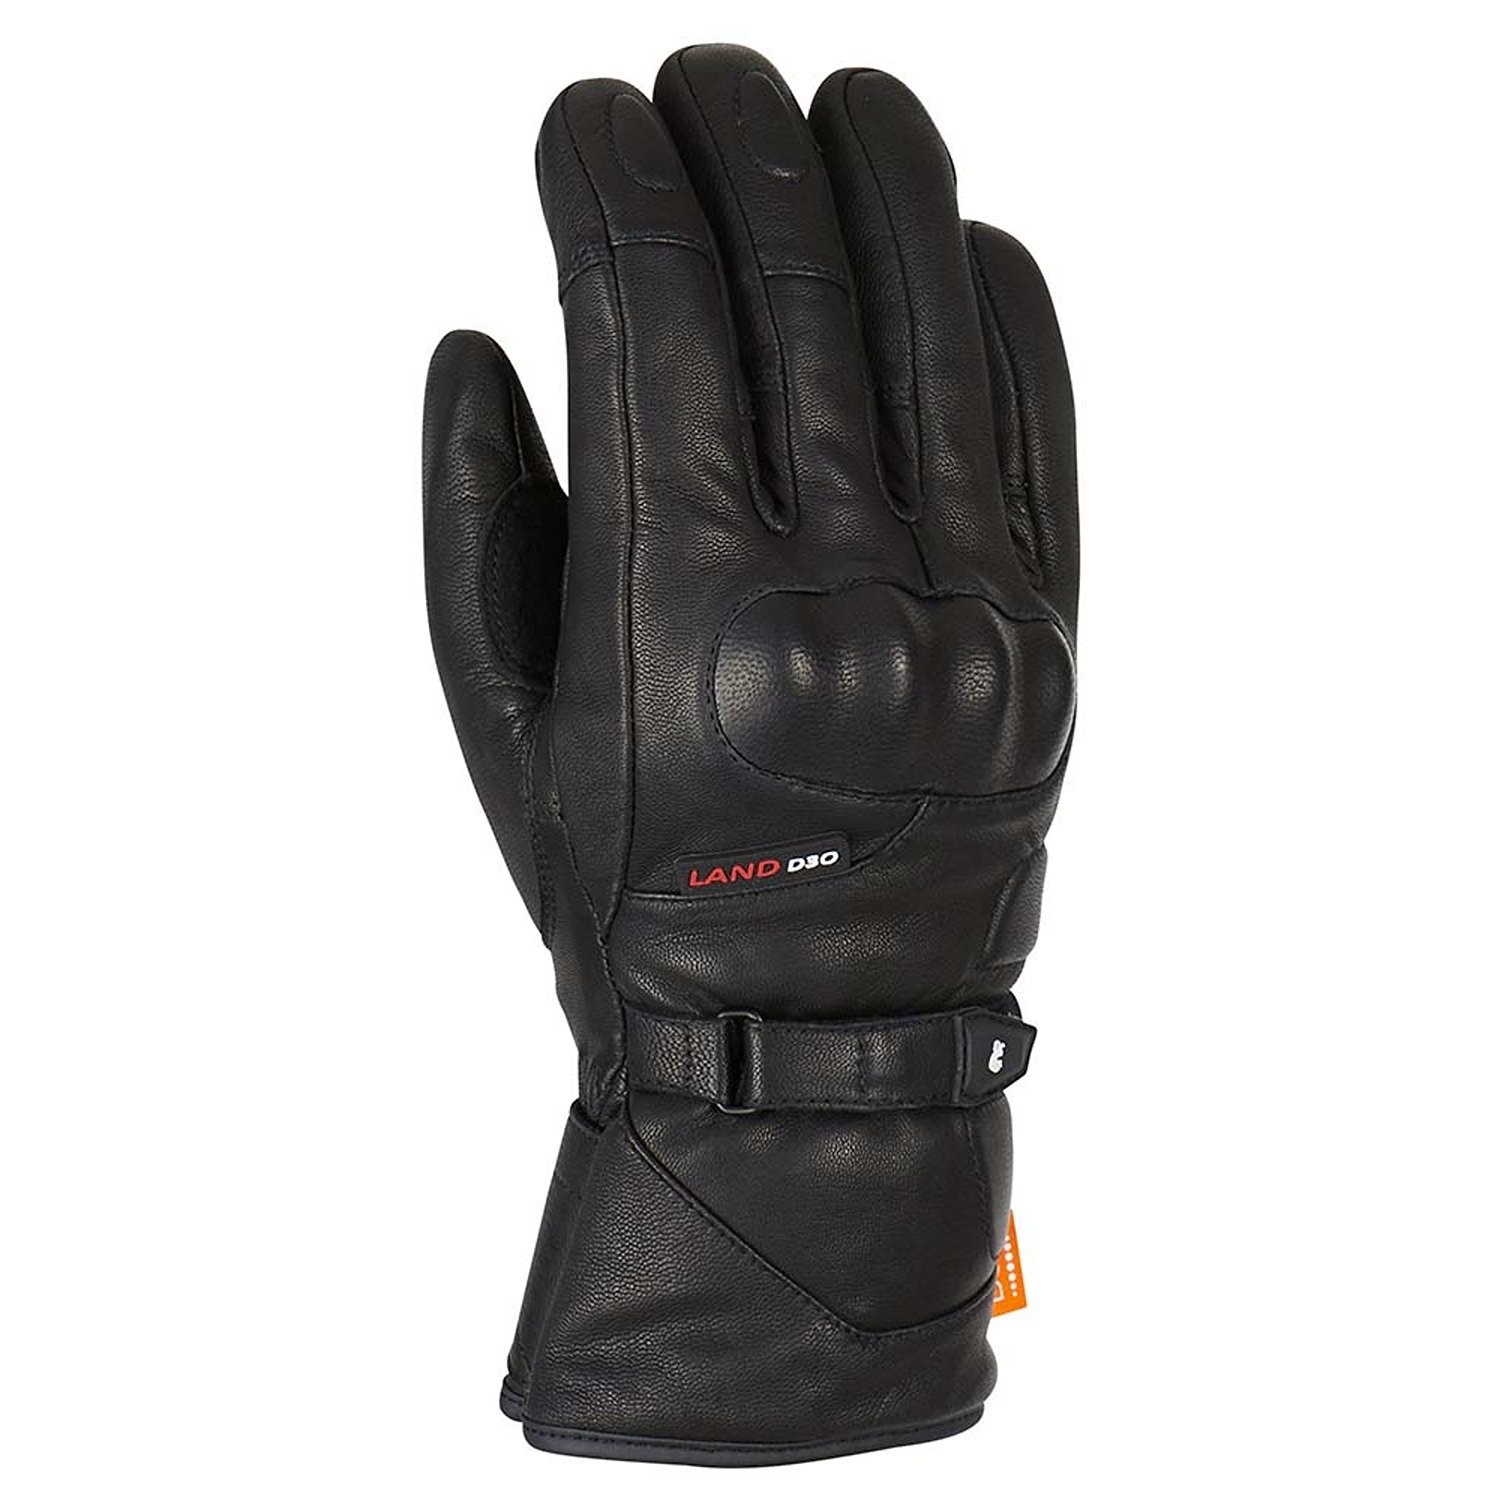 Image of EU Furygan Land DK D30 Gloves Black Taille XL